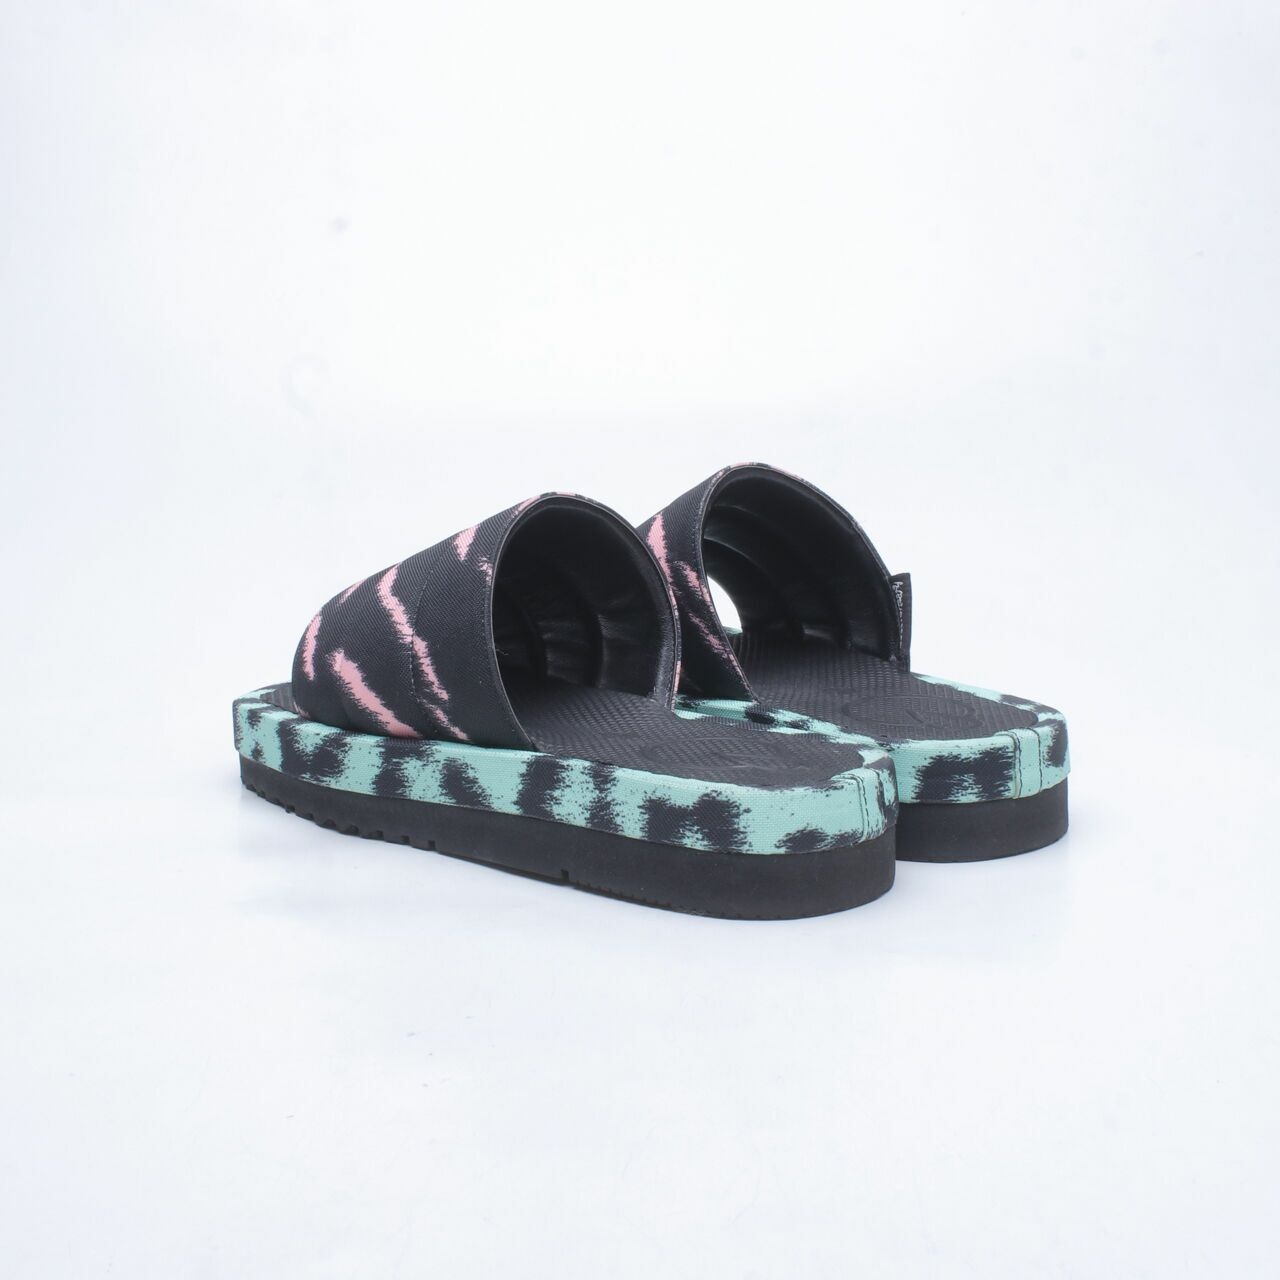 Mader Multicolor Sandals